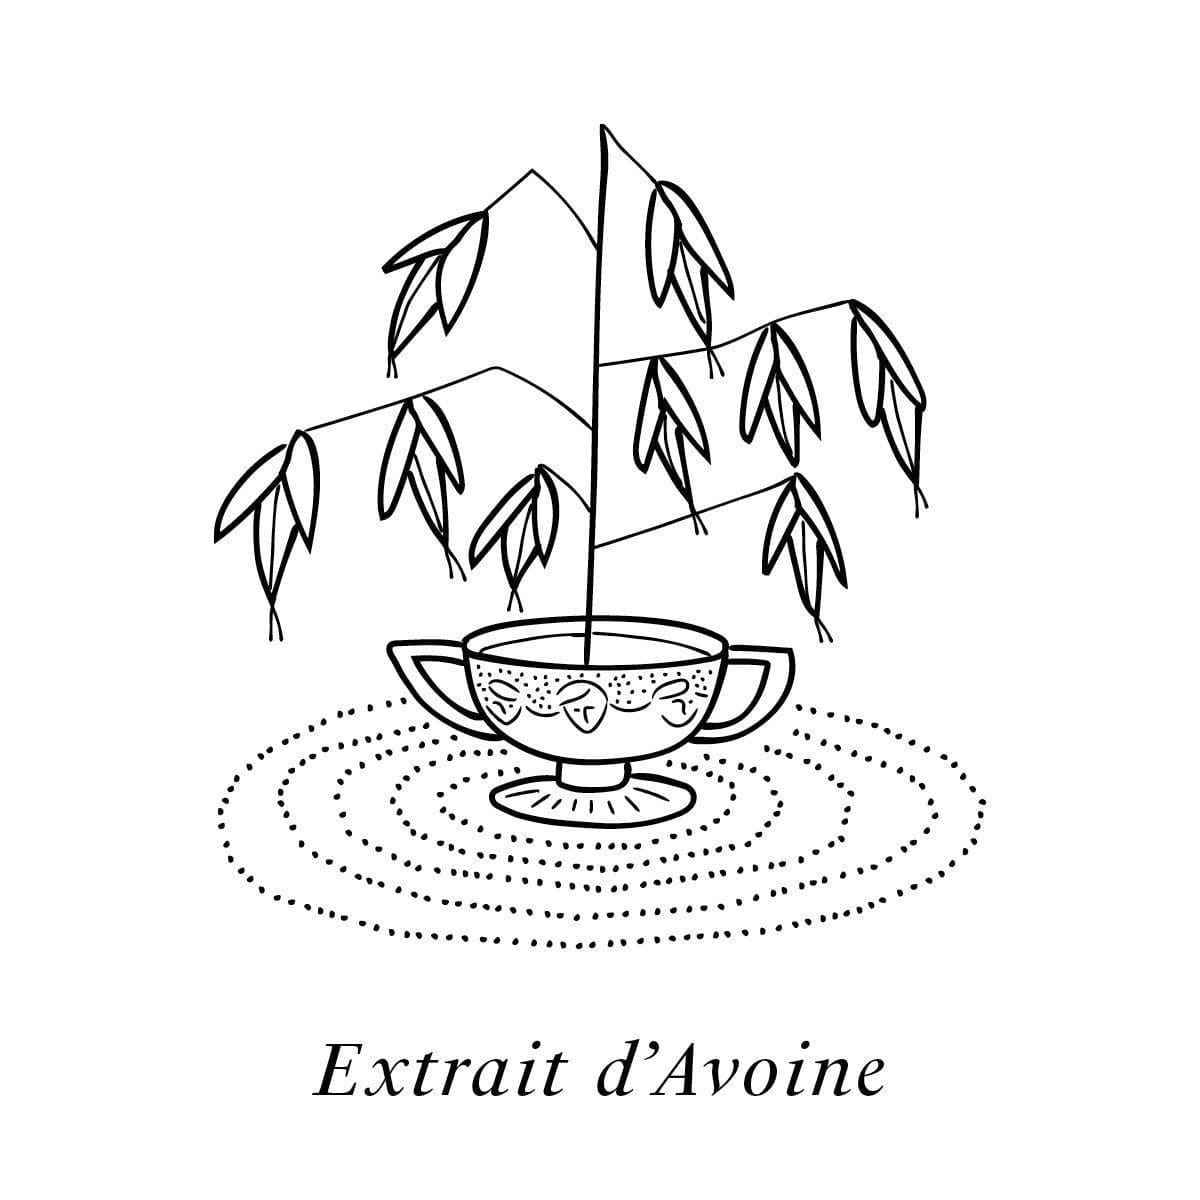 L'extrait d'avoine illustré par IchetKar, un des 19 actifs de la crème de jour et de nuit Claudius N°1